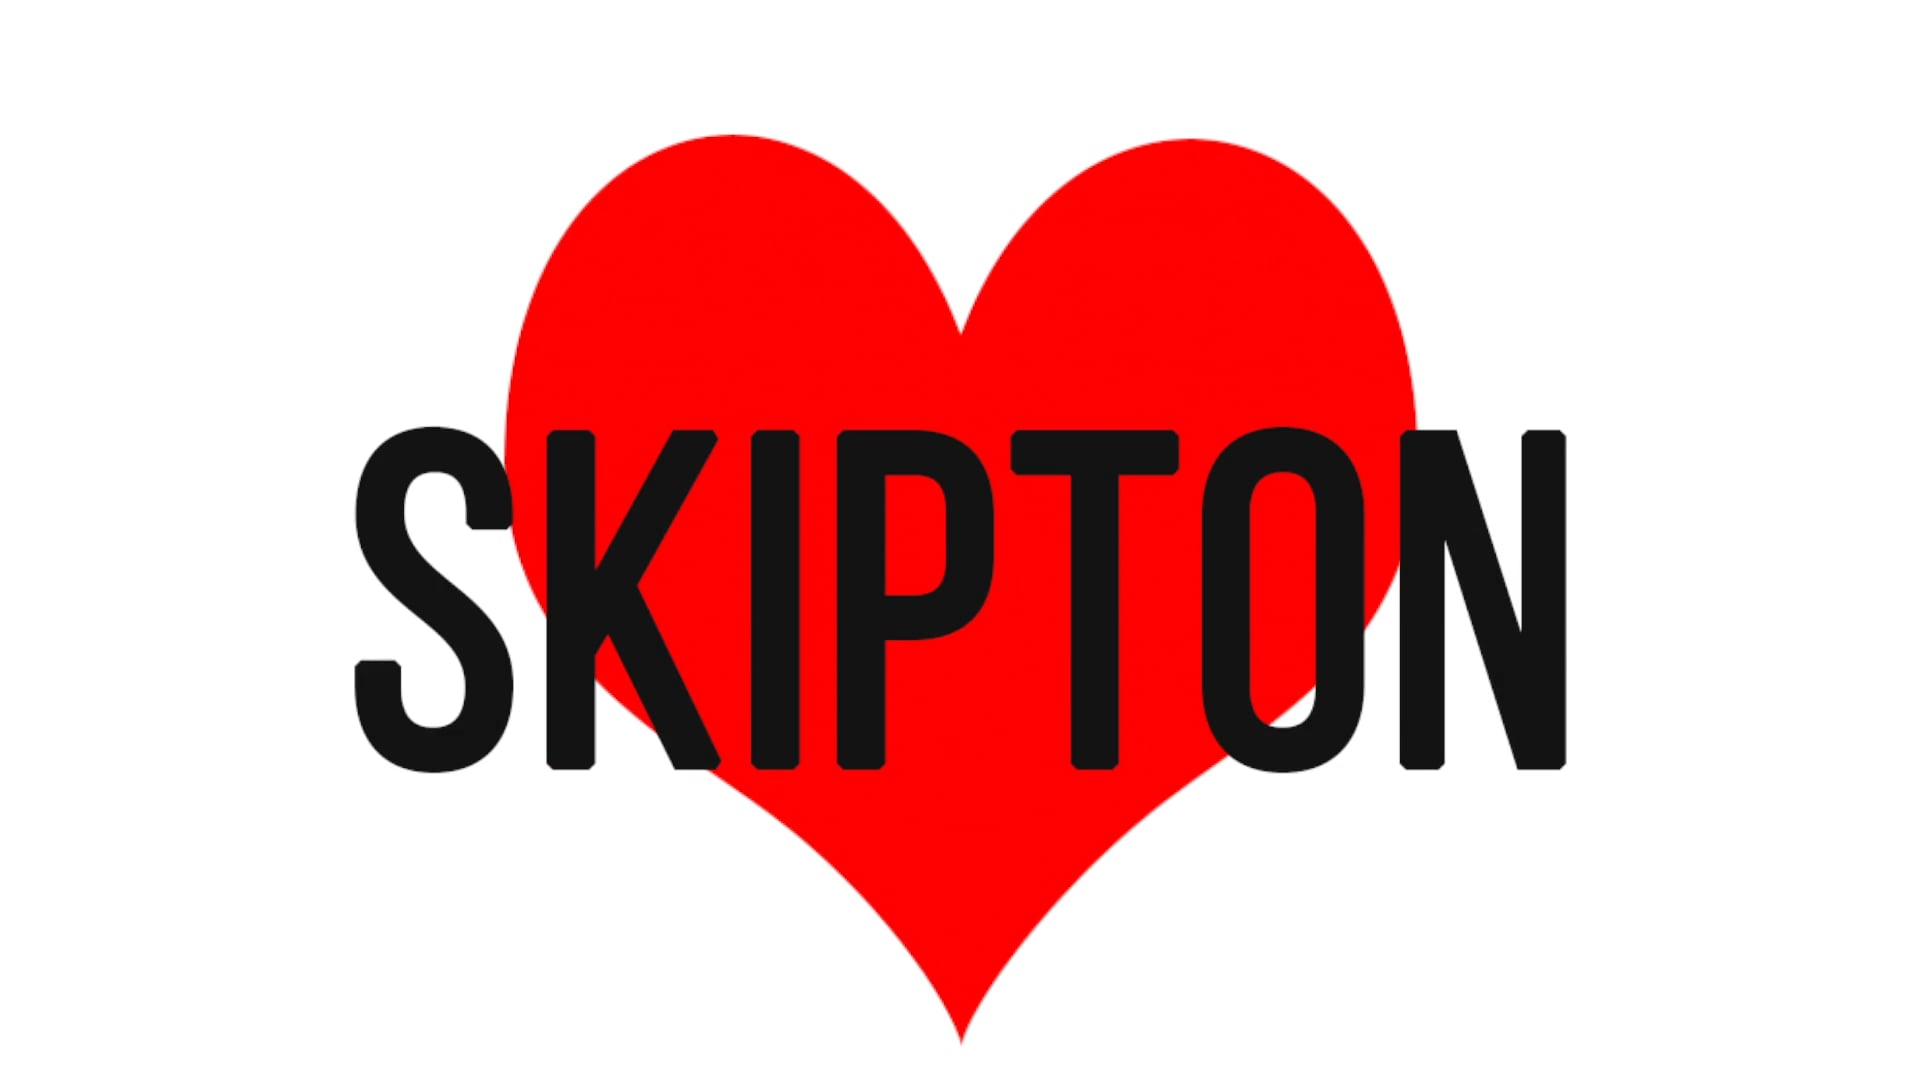 I Love Skipton